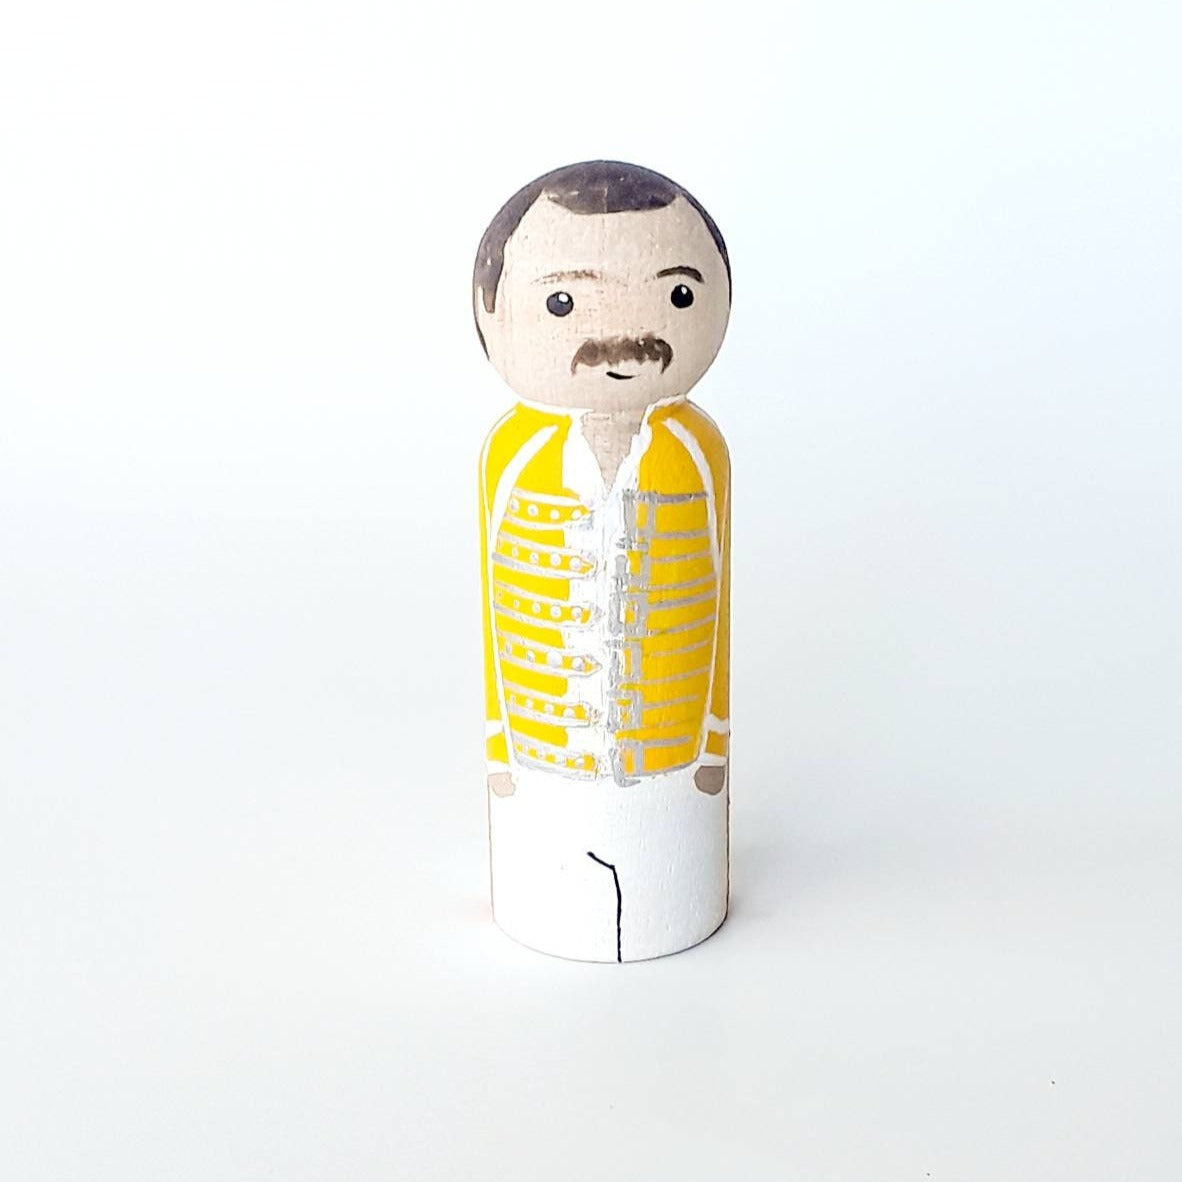 Freddie Mercury peg doll, Queen fan gift, Freddie Mercury decoration, Queen unique gift, Freddy Mercury Fan, pop culture doll, topper